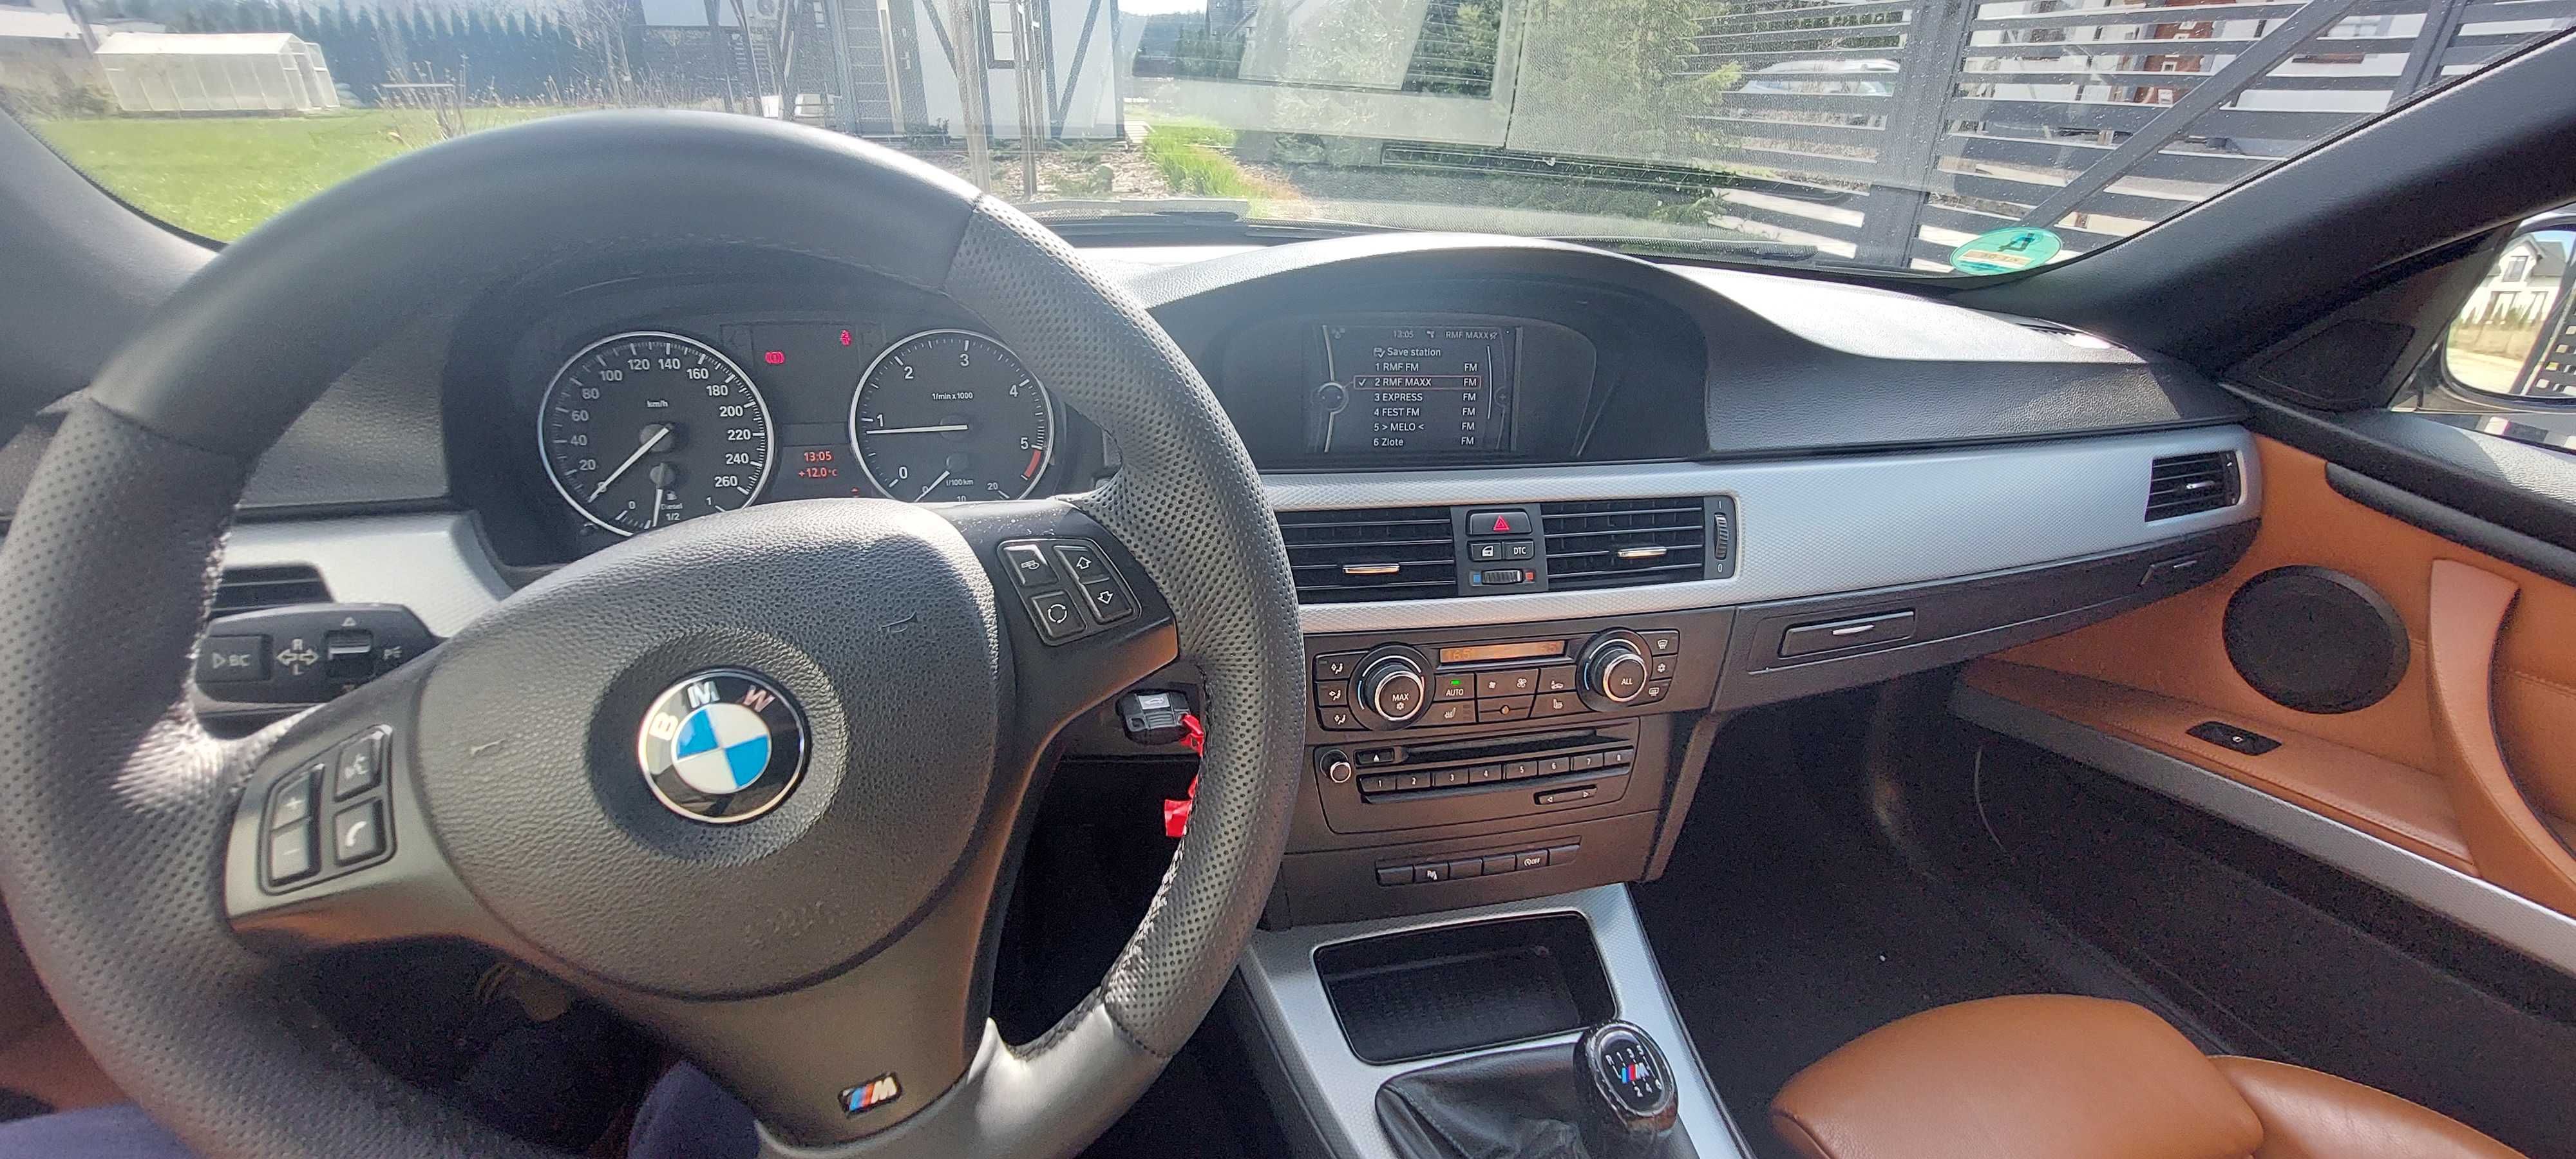 BMW320D M-pakiet, piekne, super stan, niski przebieg, 2xkomplety kol